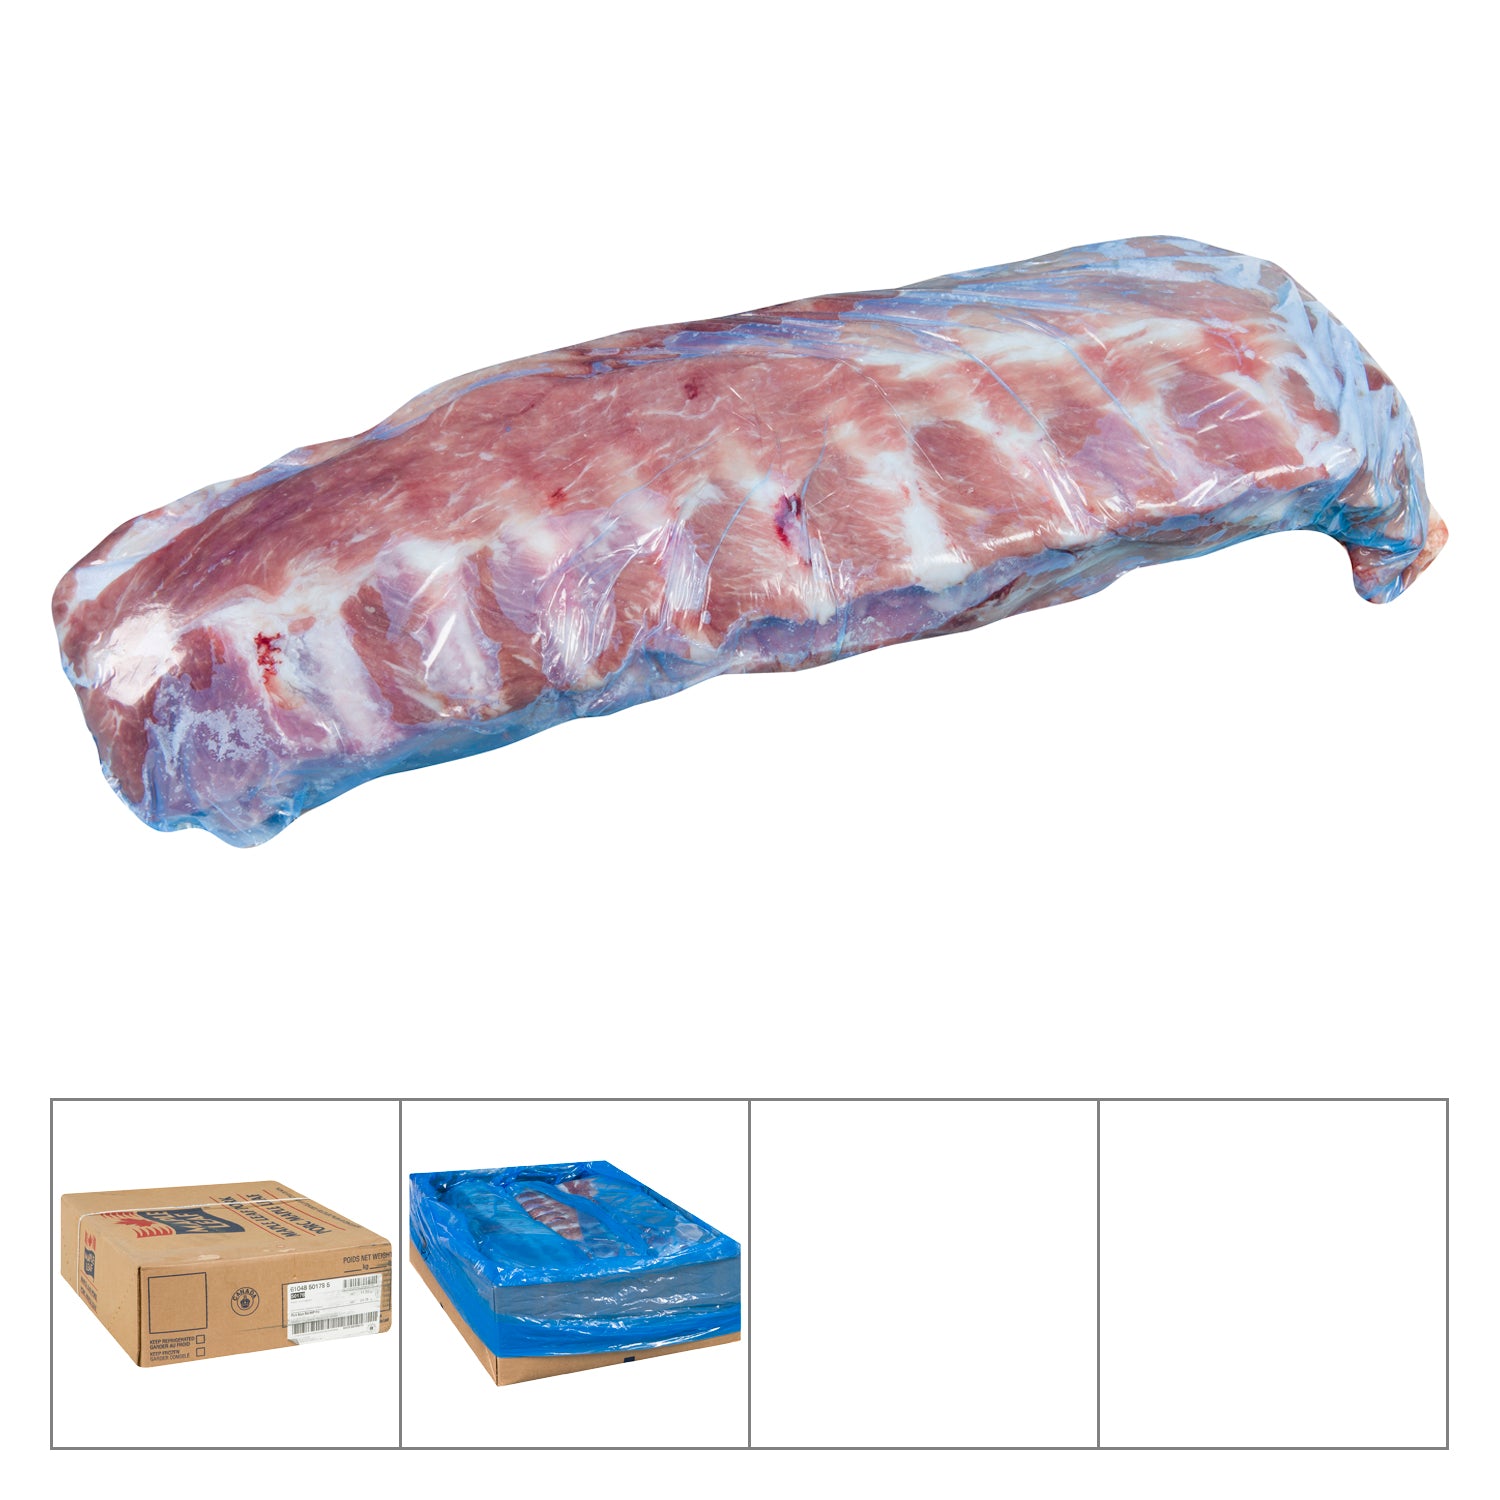 Maple Leaf Pork Back Ribs Approx. 10kg [$6.78/kg] [$3.08/lb]